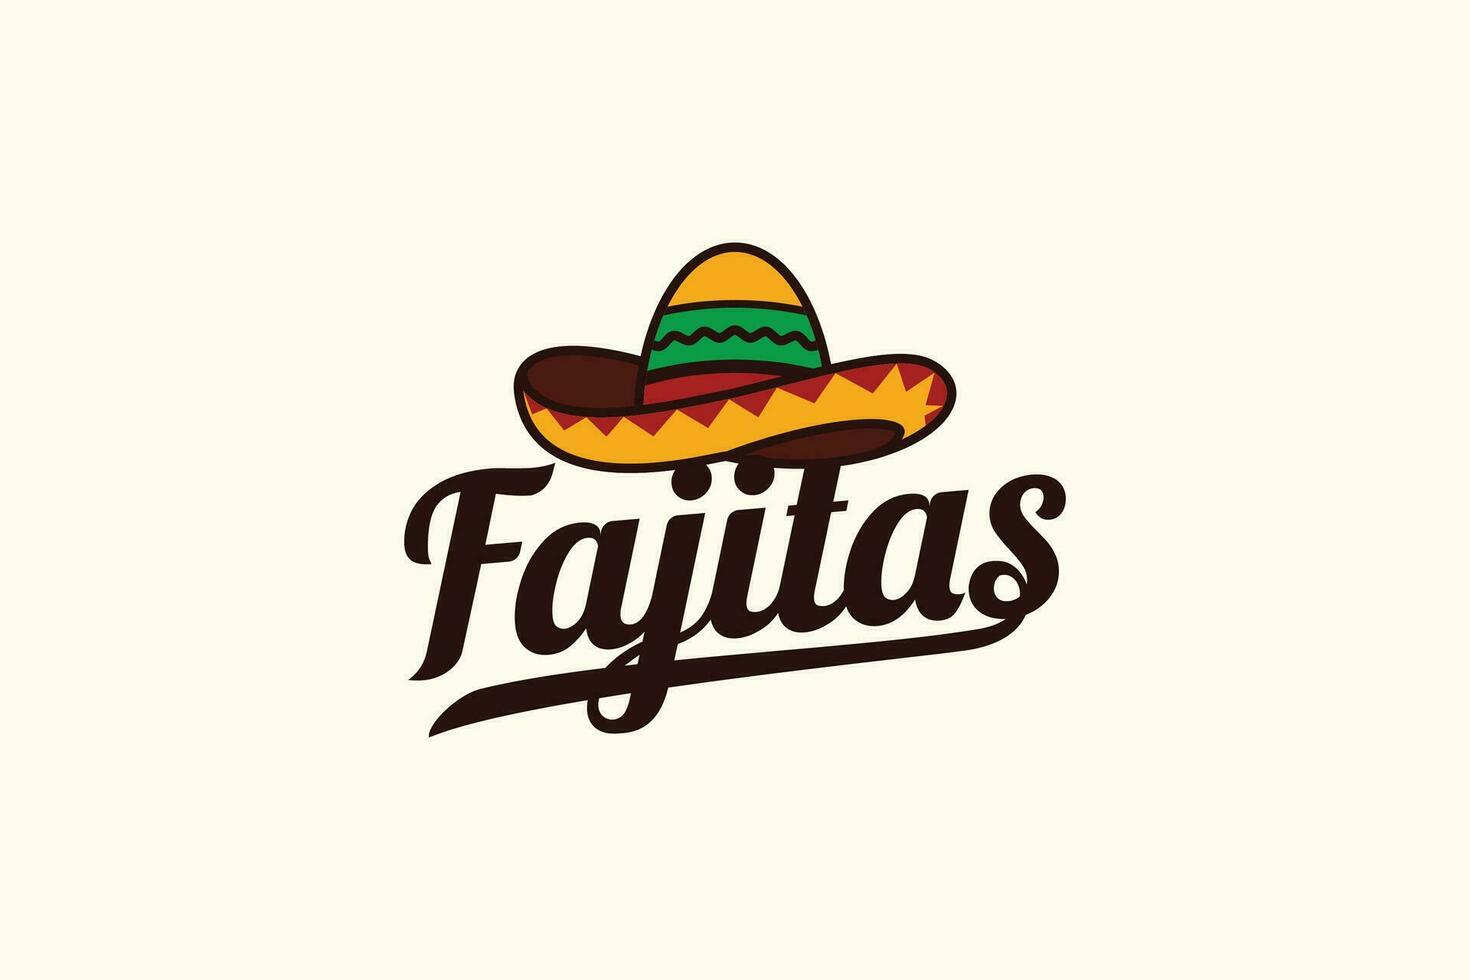 fajitas logo avec une combinaison de une sombrero ou mexicain chapeau et magnifique caractères pour mexicain Restaurants, les cafés, nourriture camions, etc. vecteur